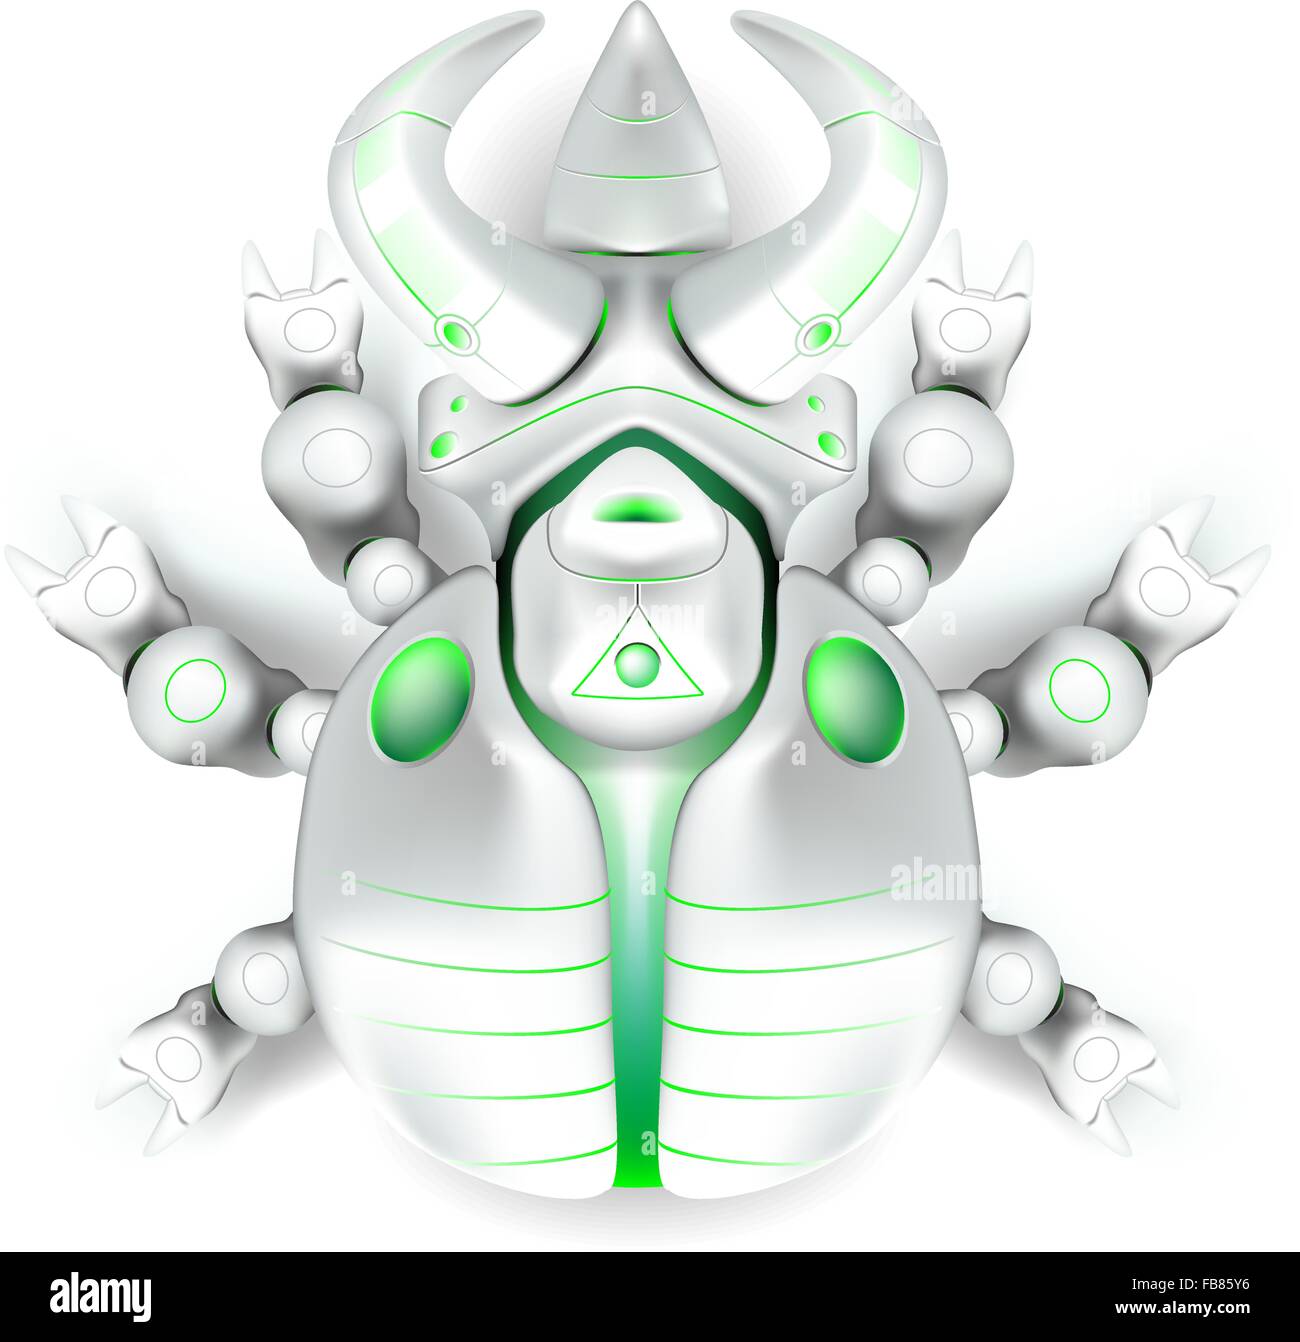 Una illustrazione vettoriale di uno scarabeo rinoceronte robot creato per assomigliare ad un prodotto moderno o giocattolo. Illustrazione Vettoriale